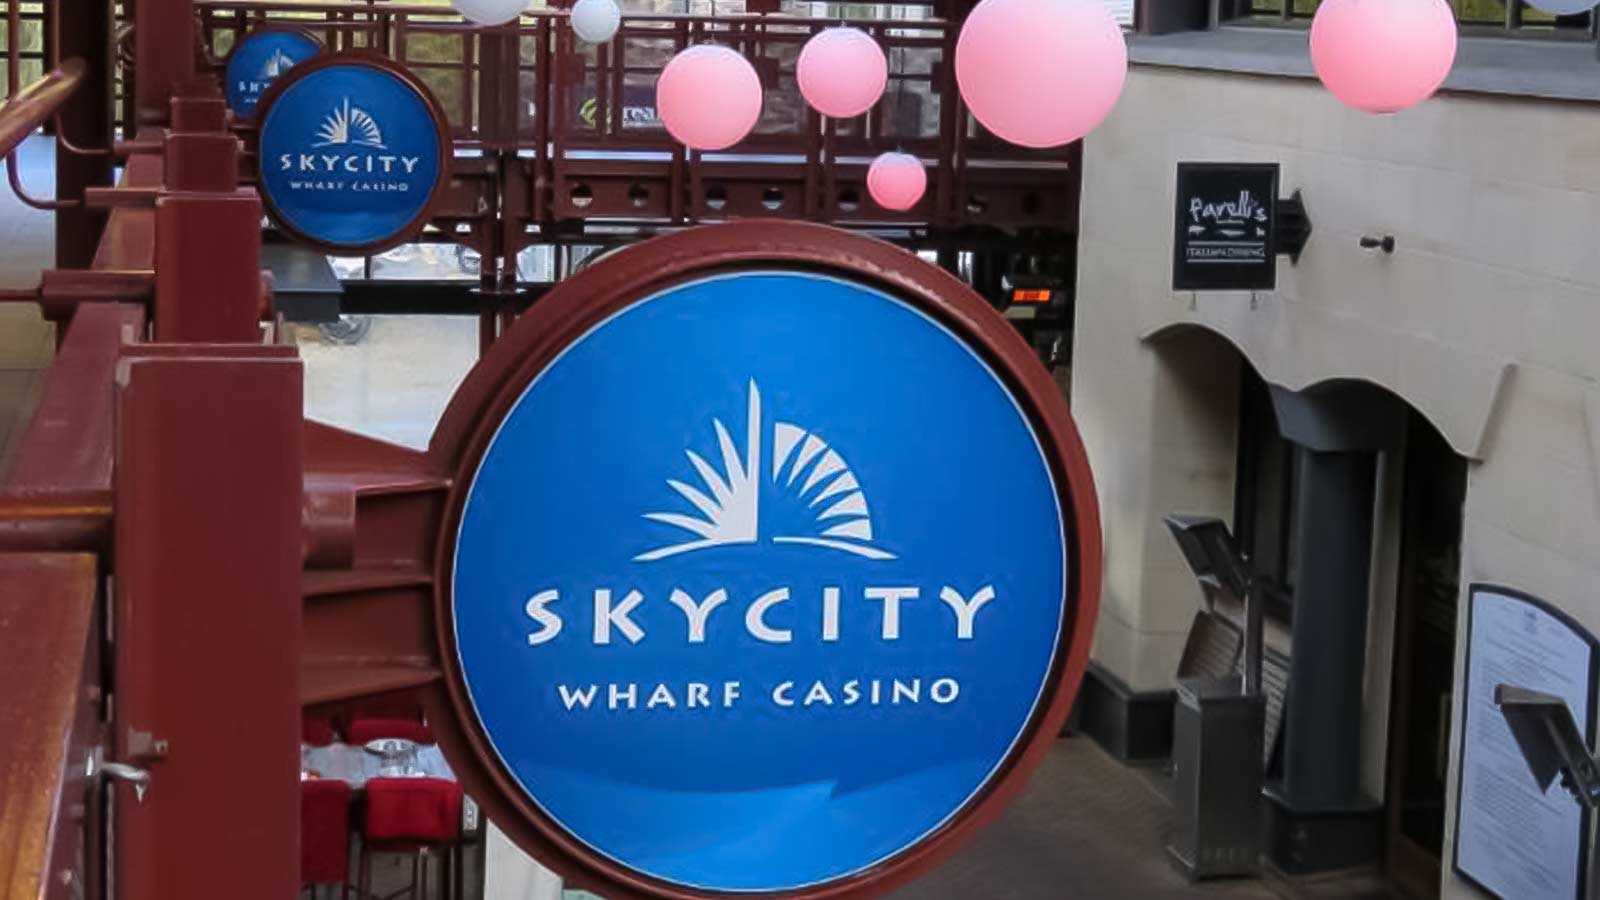 SkyCity Wharf Casino